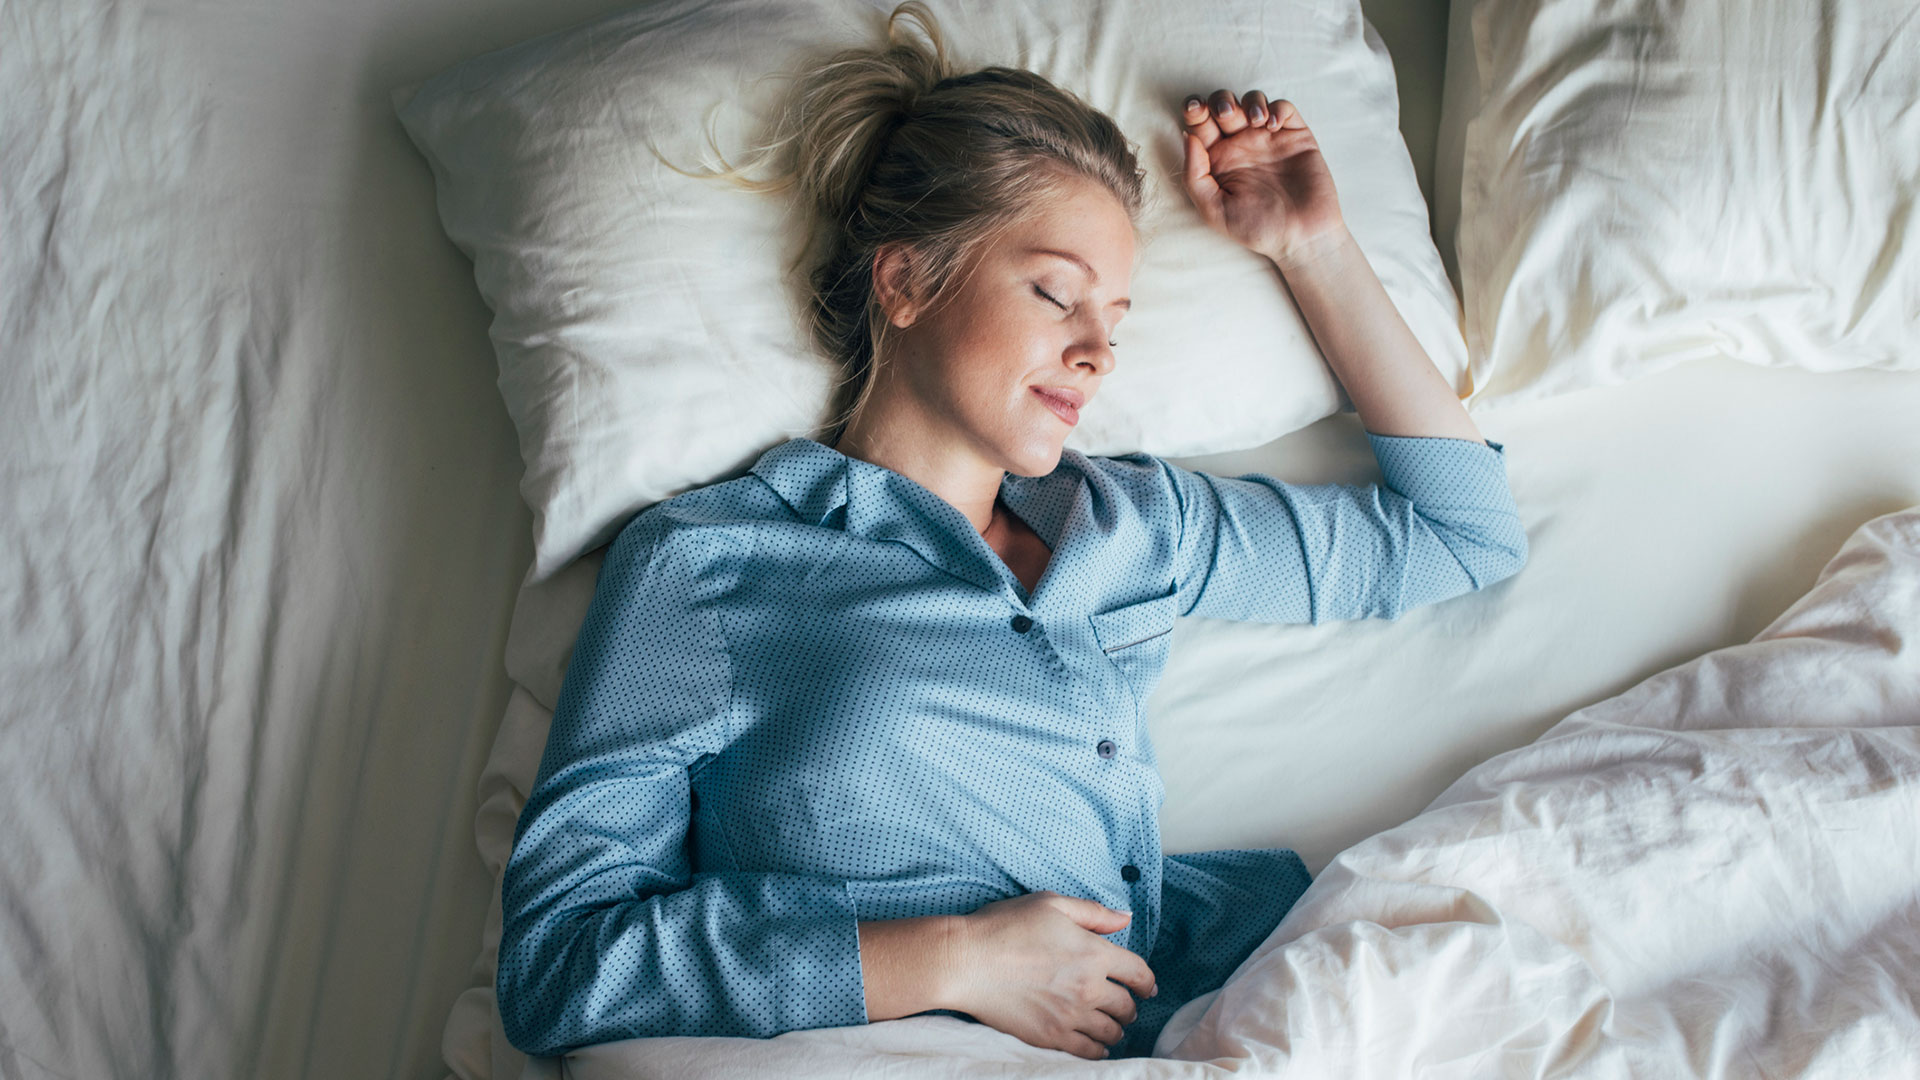 Las apneas del sueño son un problema crónico de salud que altera el sueño y el buen descanso (Getty)